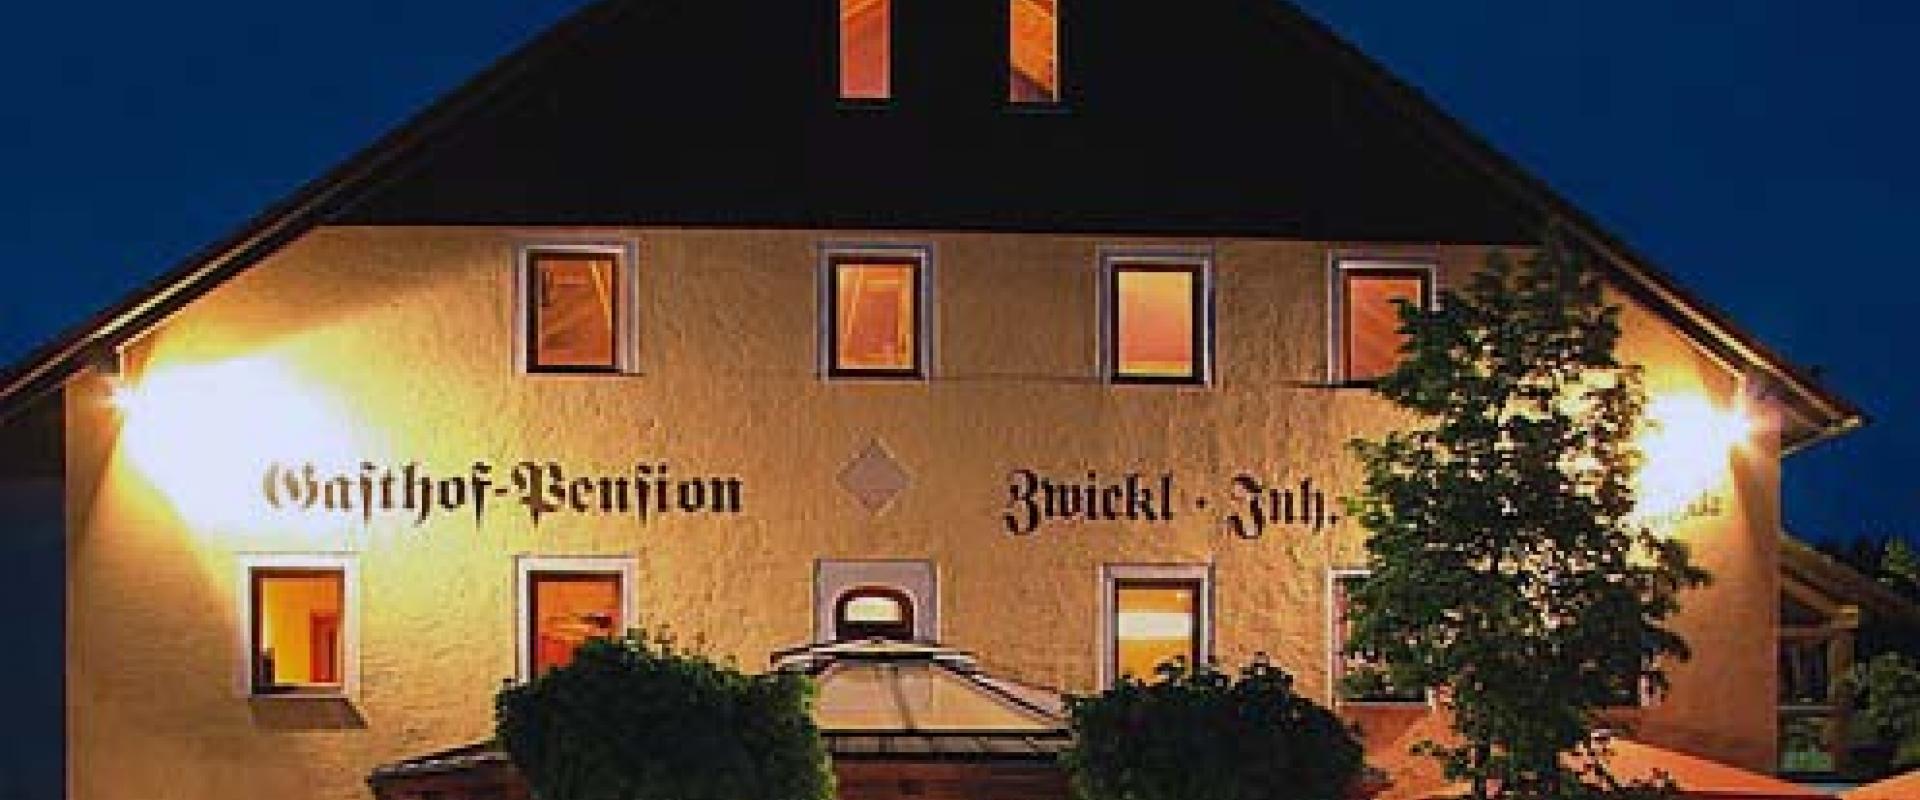 15325 Motorrad Hotel Zwickl im Bayerischen Wald.jpg